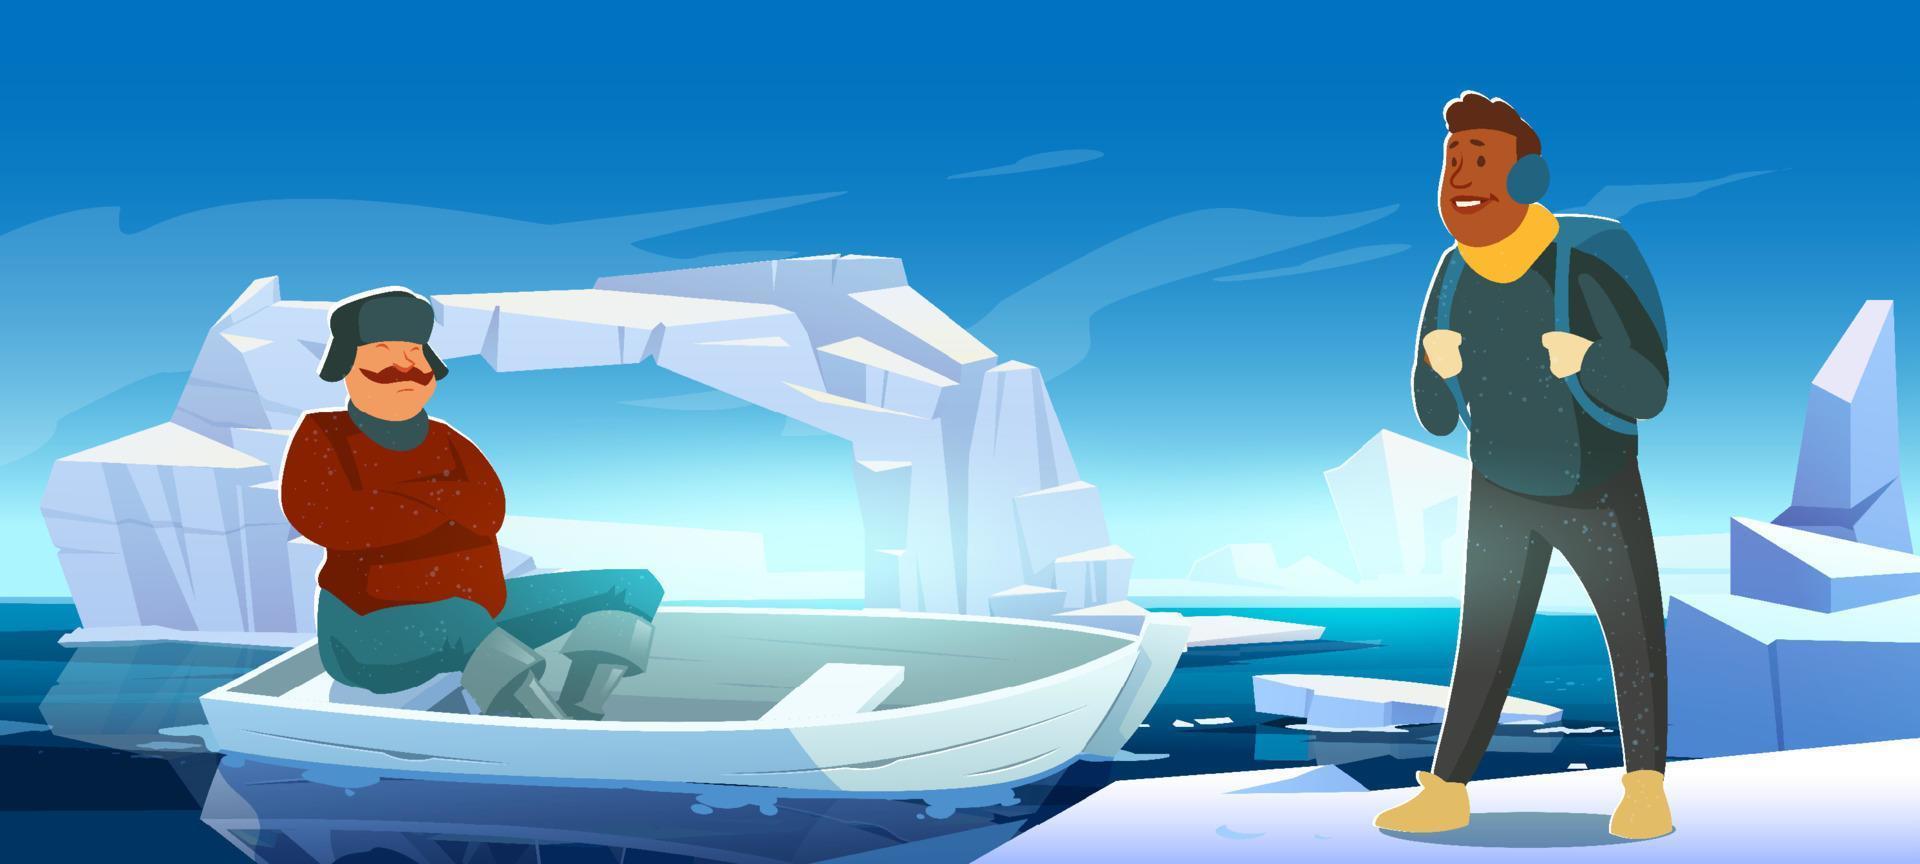 paisagem ártica com iceberg, barco e pessoas vetor